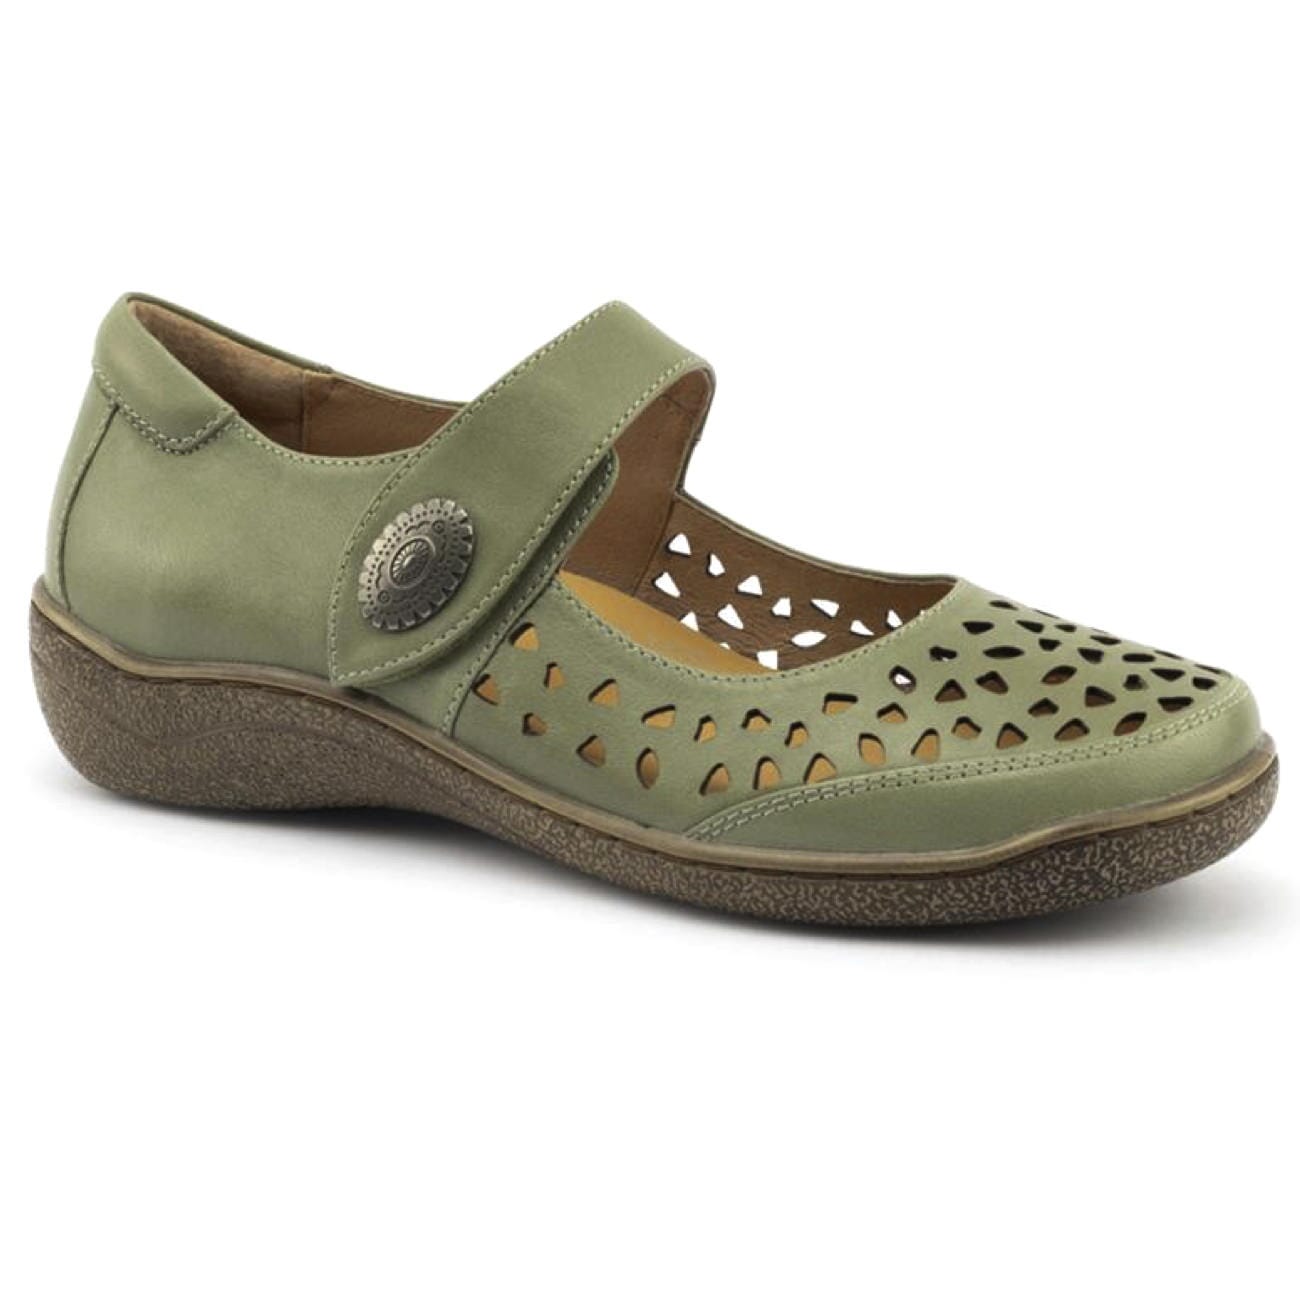 Klouds, Piper, Shoe, Leather, Pistachio Shoes Klouds Pistachio 36 